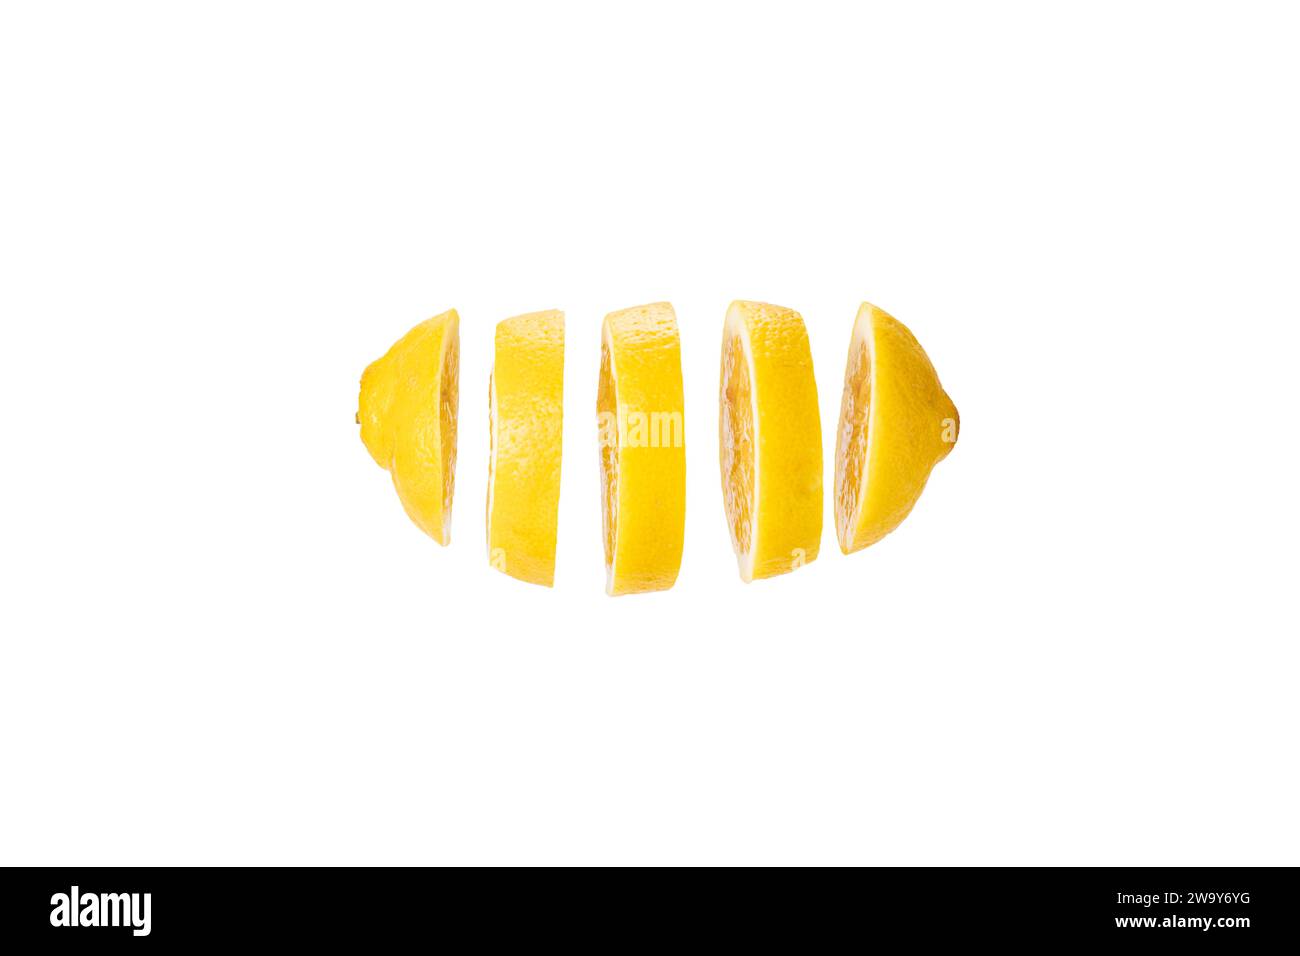 Zitrone in Scheiben geschnitten und frei schwebend vor weißem Hintergrund. A lemon cut in slices before a white backdrop Stock Photo